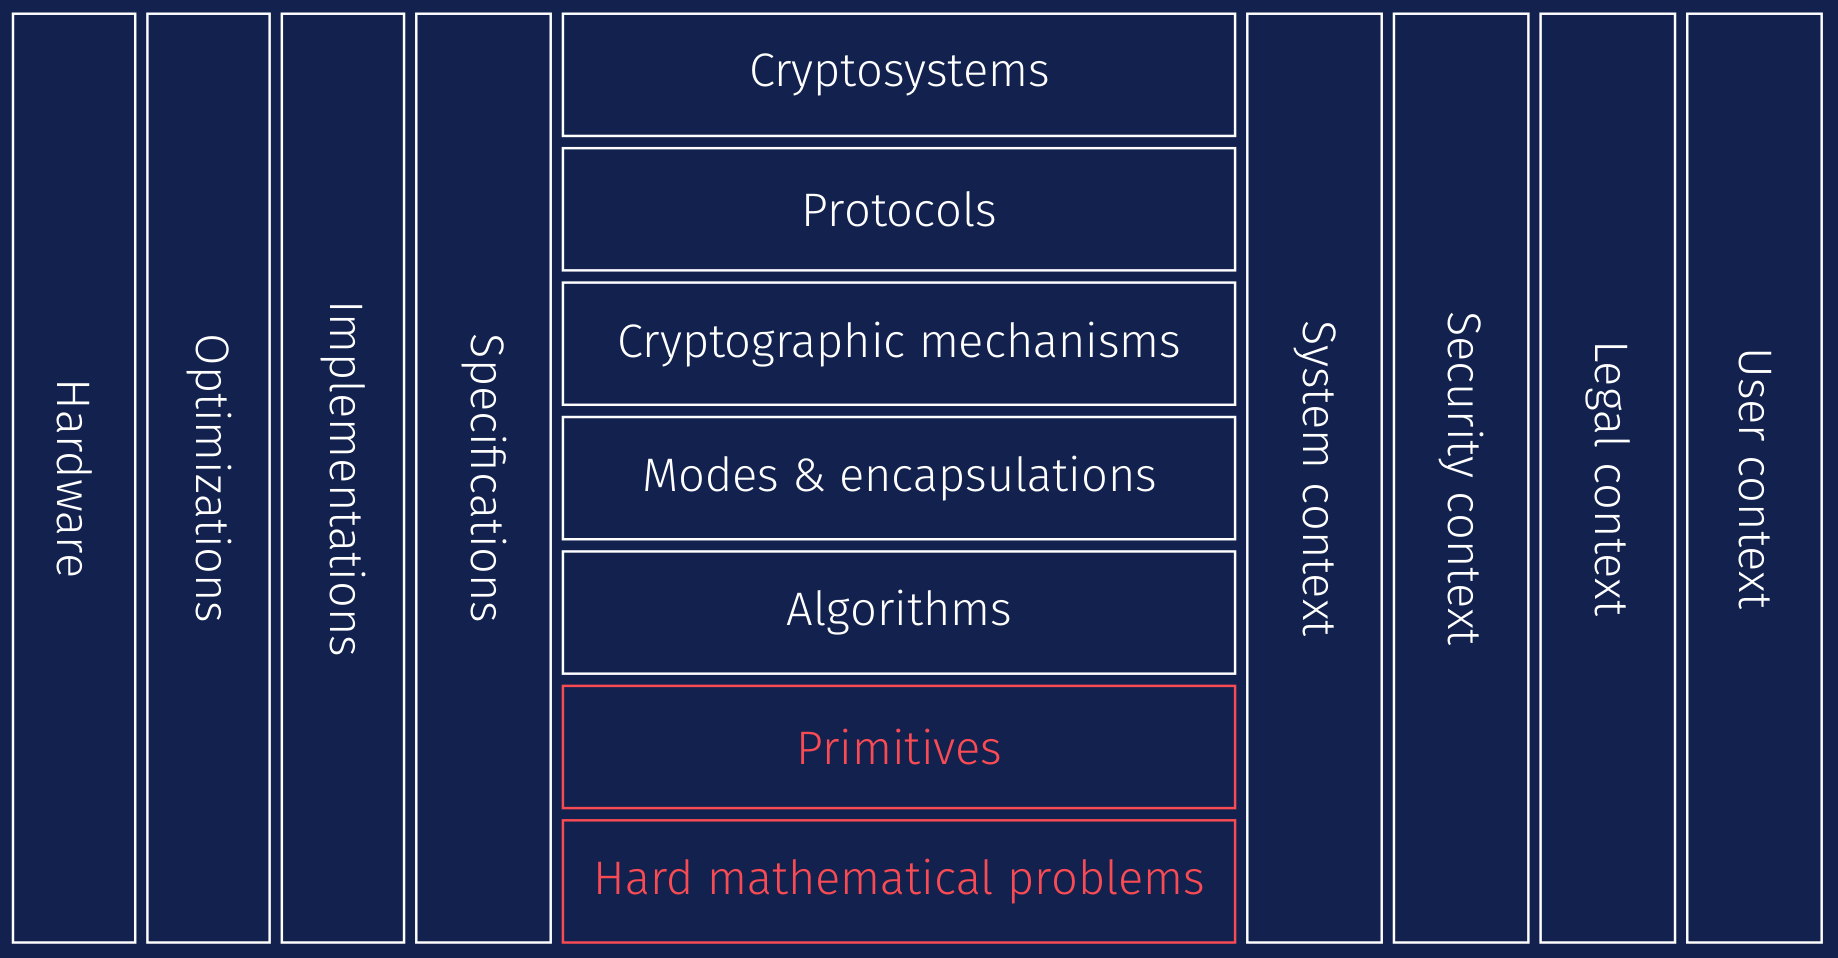 Post-Quantum Cryptography Initiative | CISA